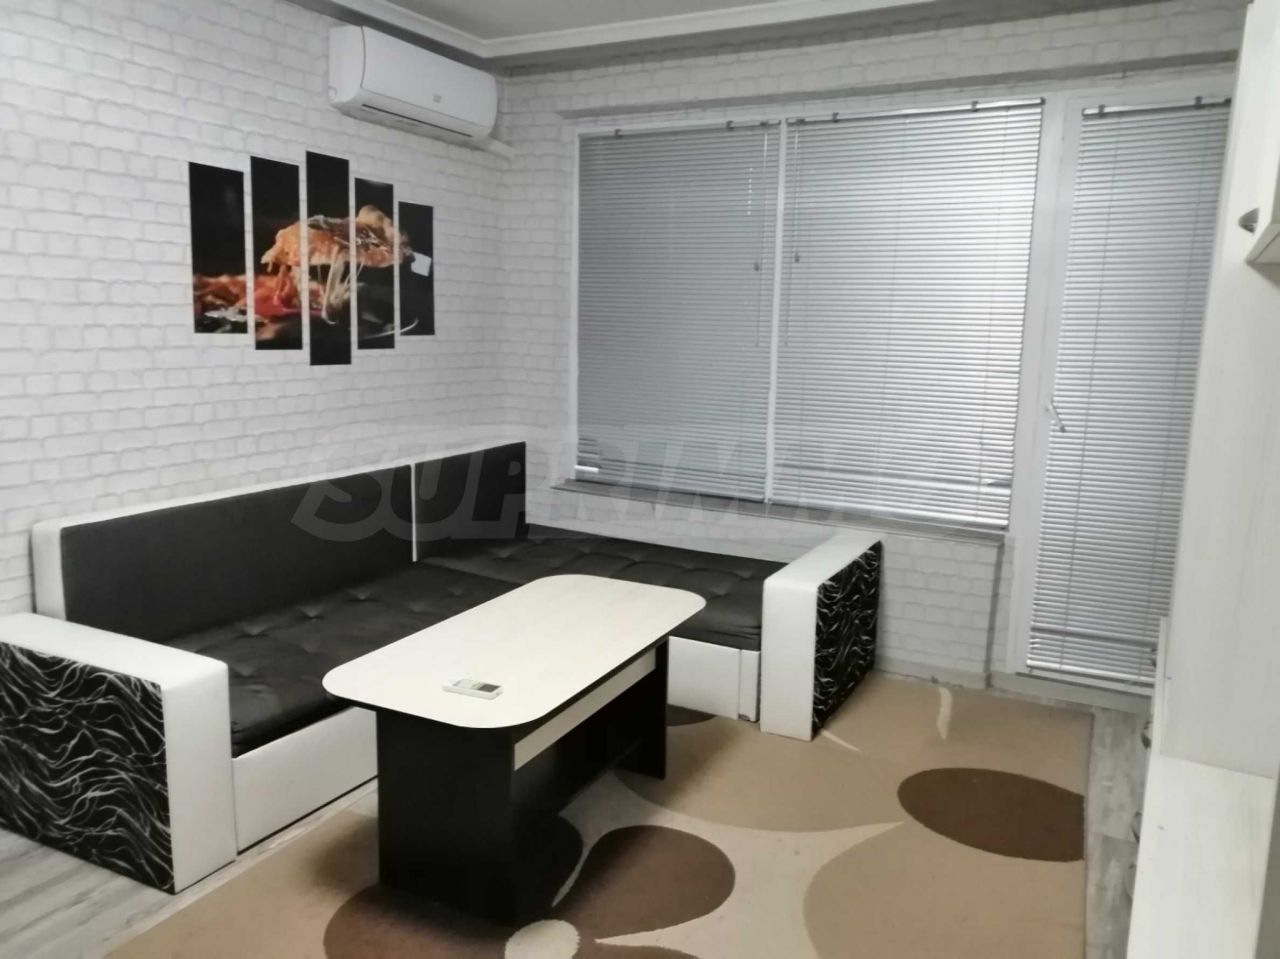 Apartment in Varna, Bulgaria, 48 sq.m - picture 1